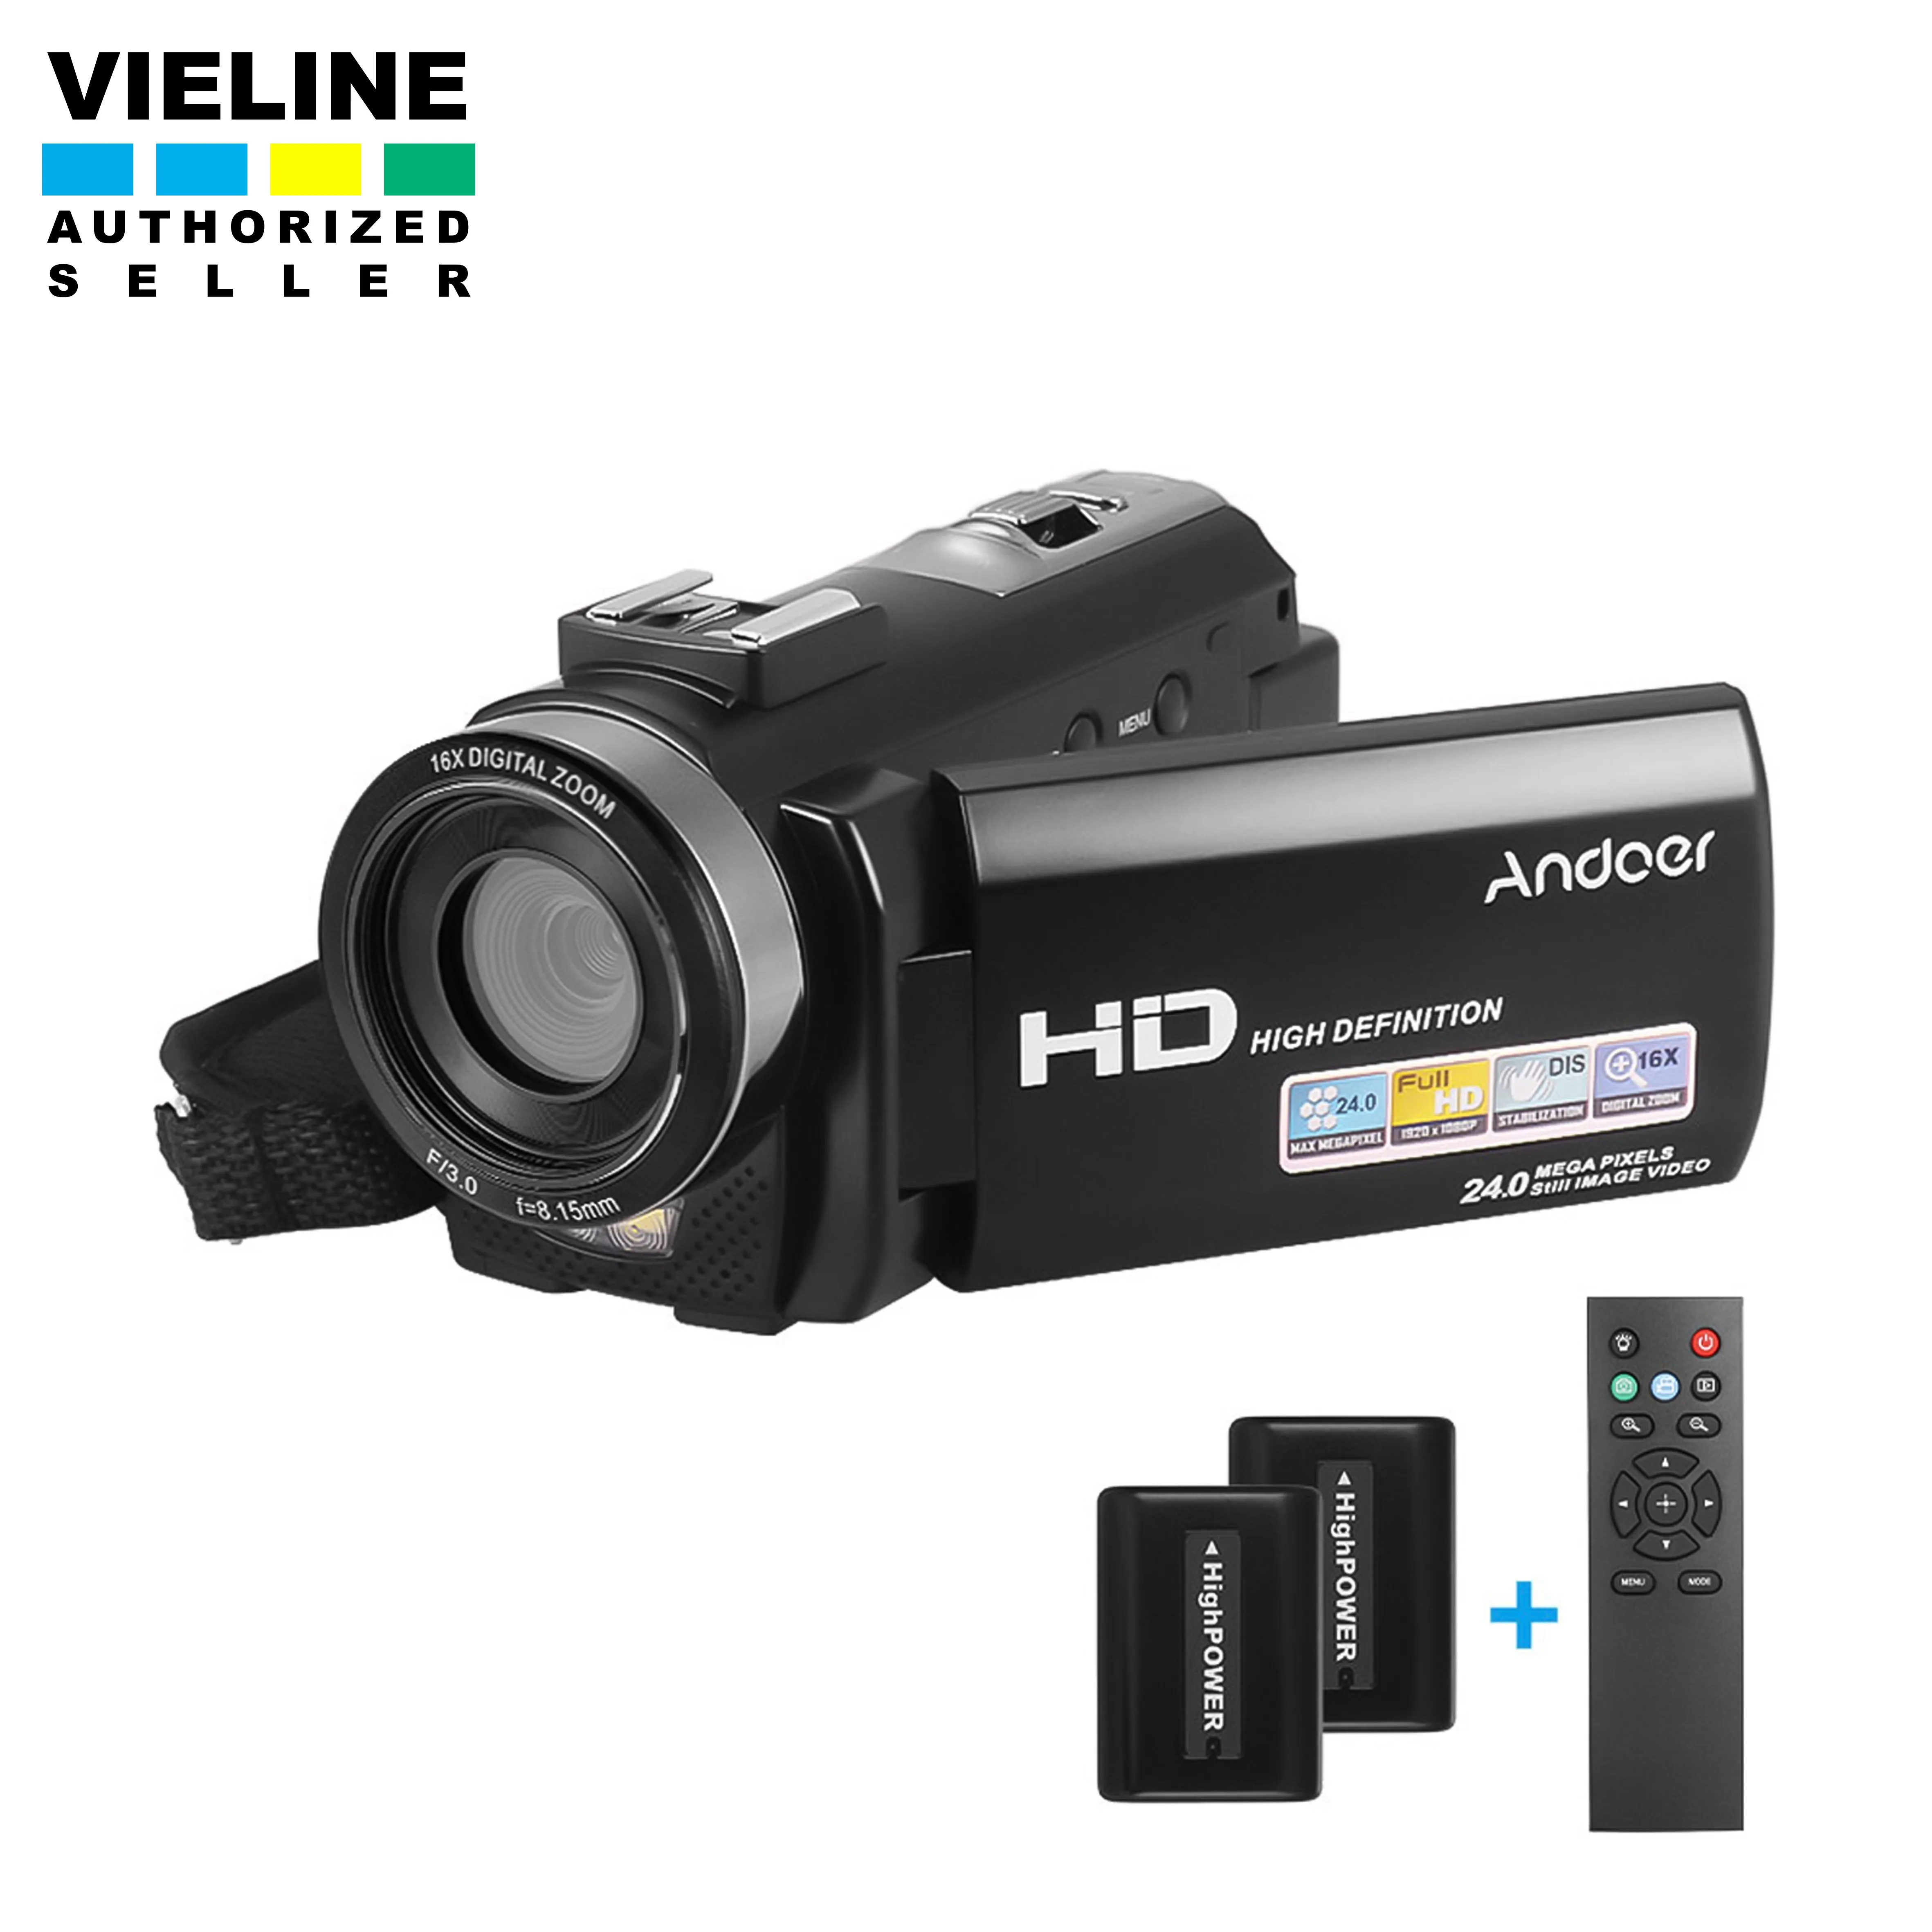 Andoer HDV-201LM 1080 จุด FHD กล้องวิดีโอดิจิตอลกล้องบันทึก DV 24mp 16X ซูมดิจิตอล 3.0 นิ้วหน้าจอแอลซีดี